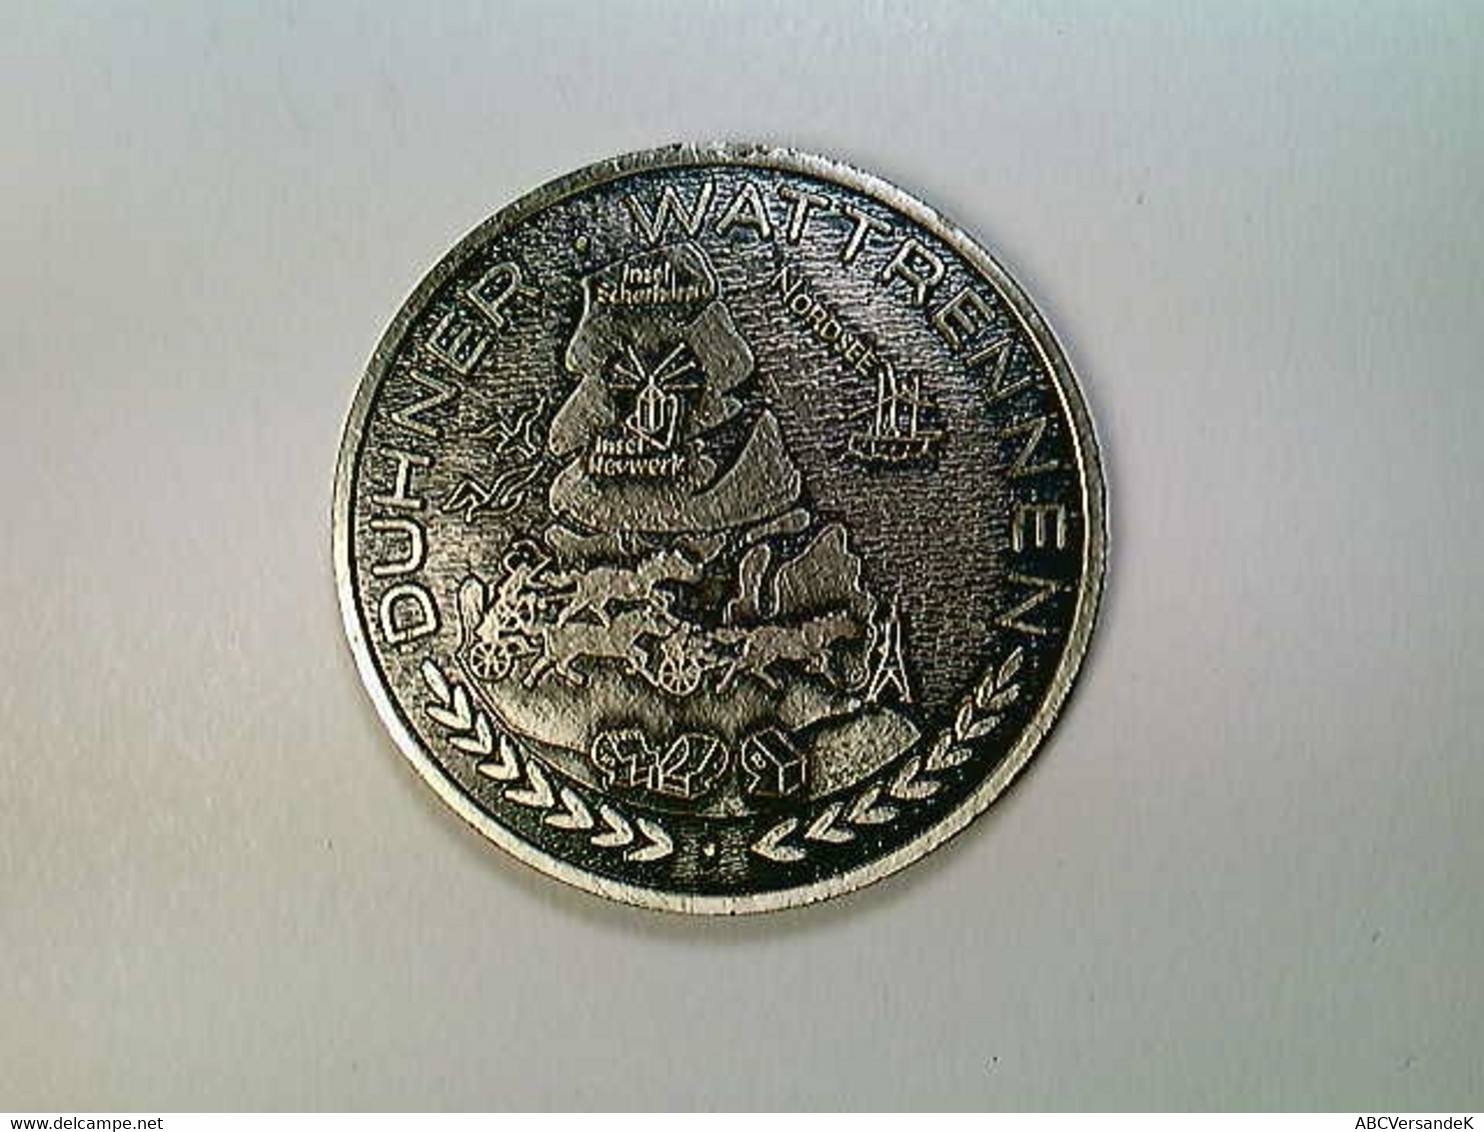 Medaille Cuxhafen, Duhner Wattrennen - Numismatik